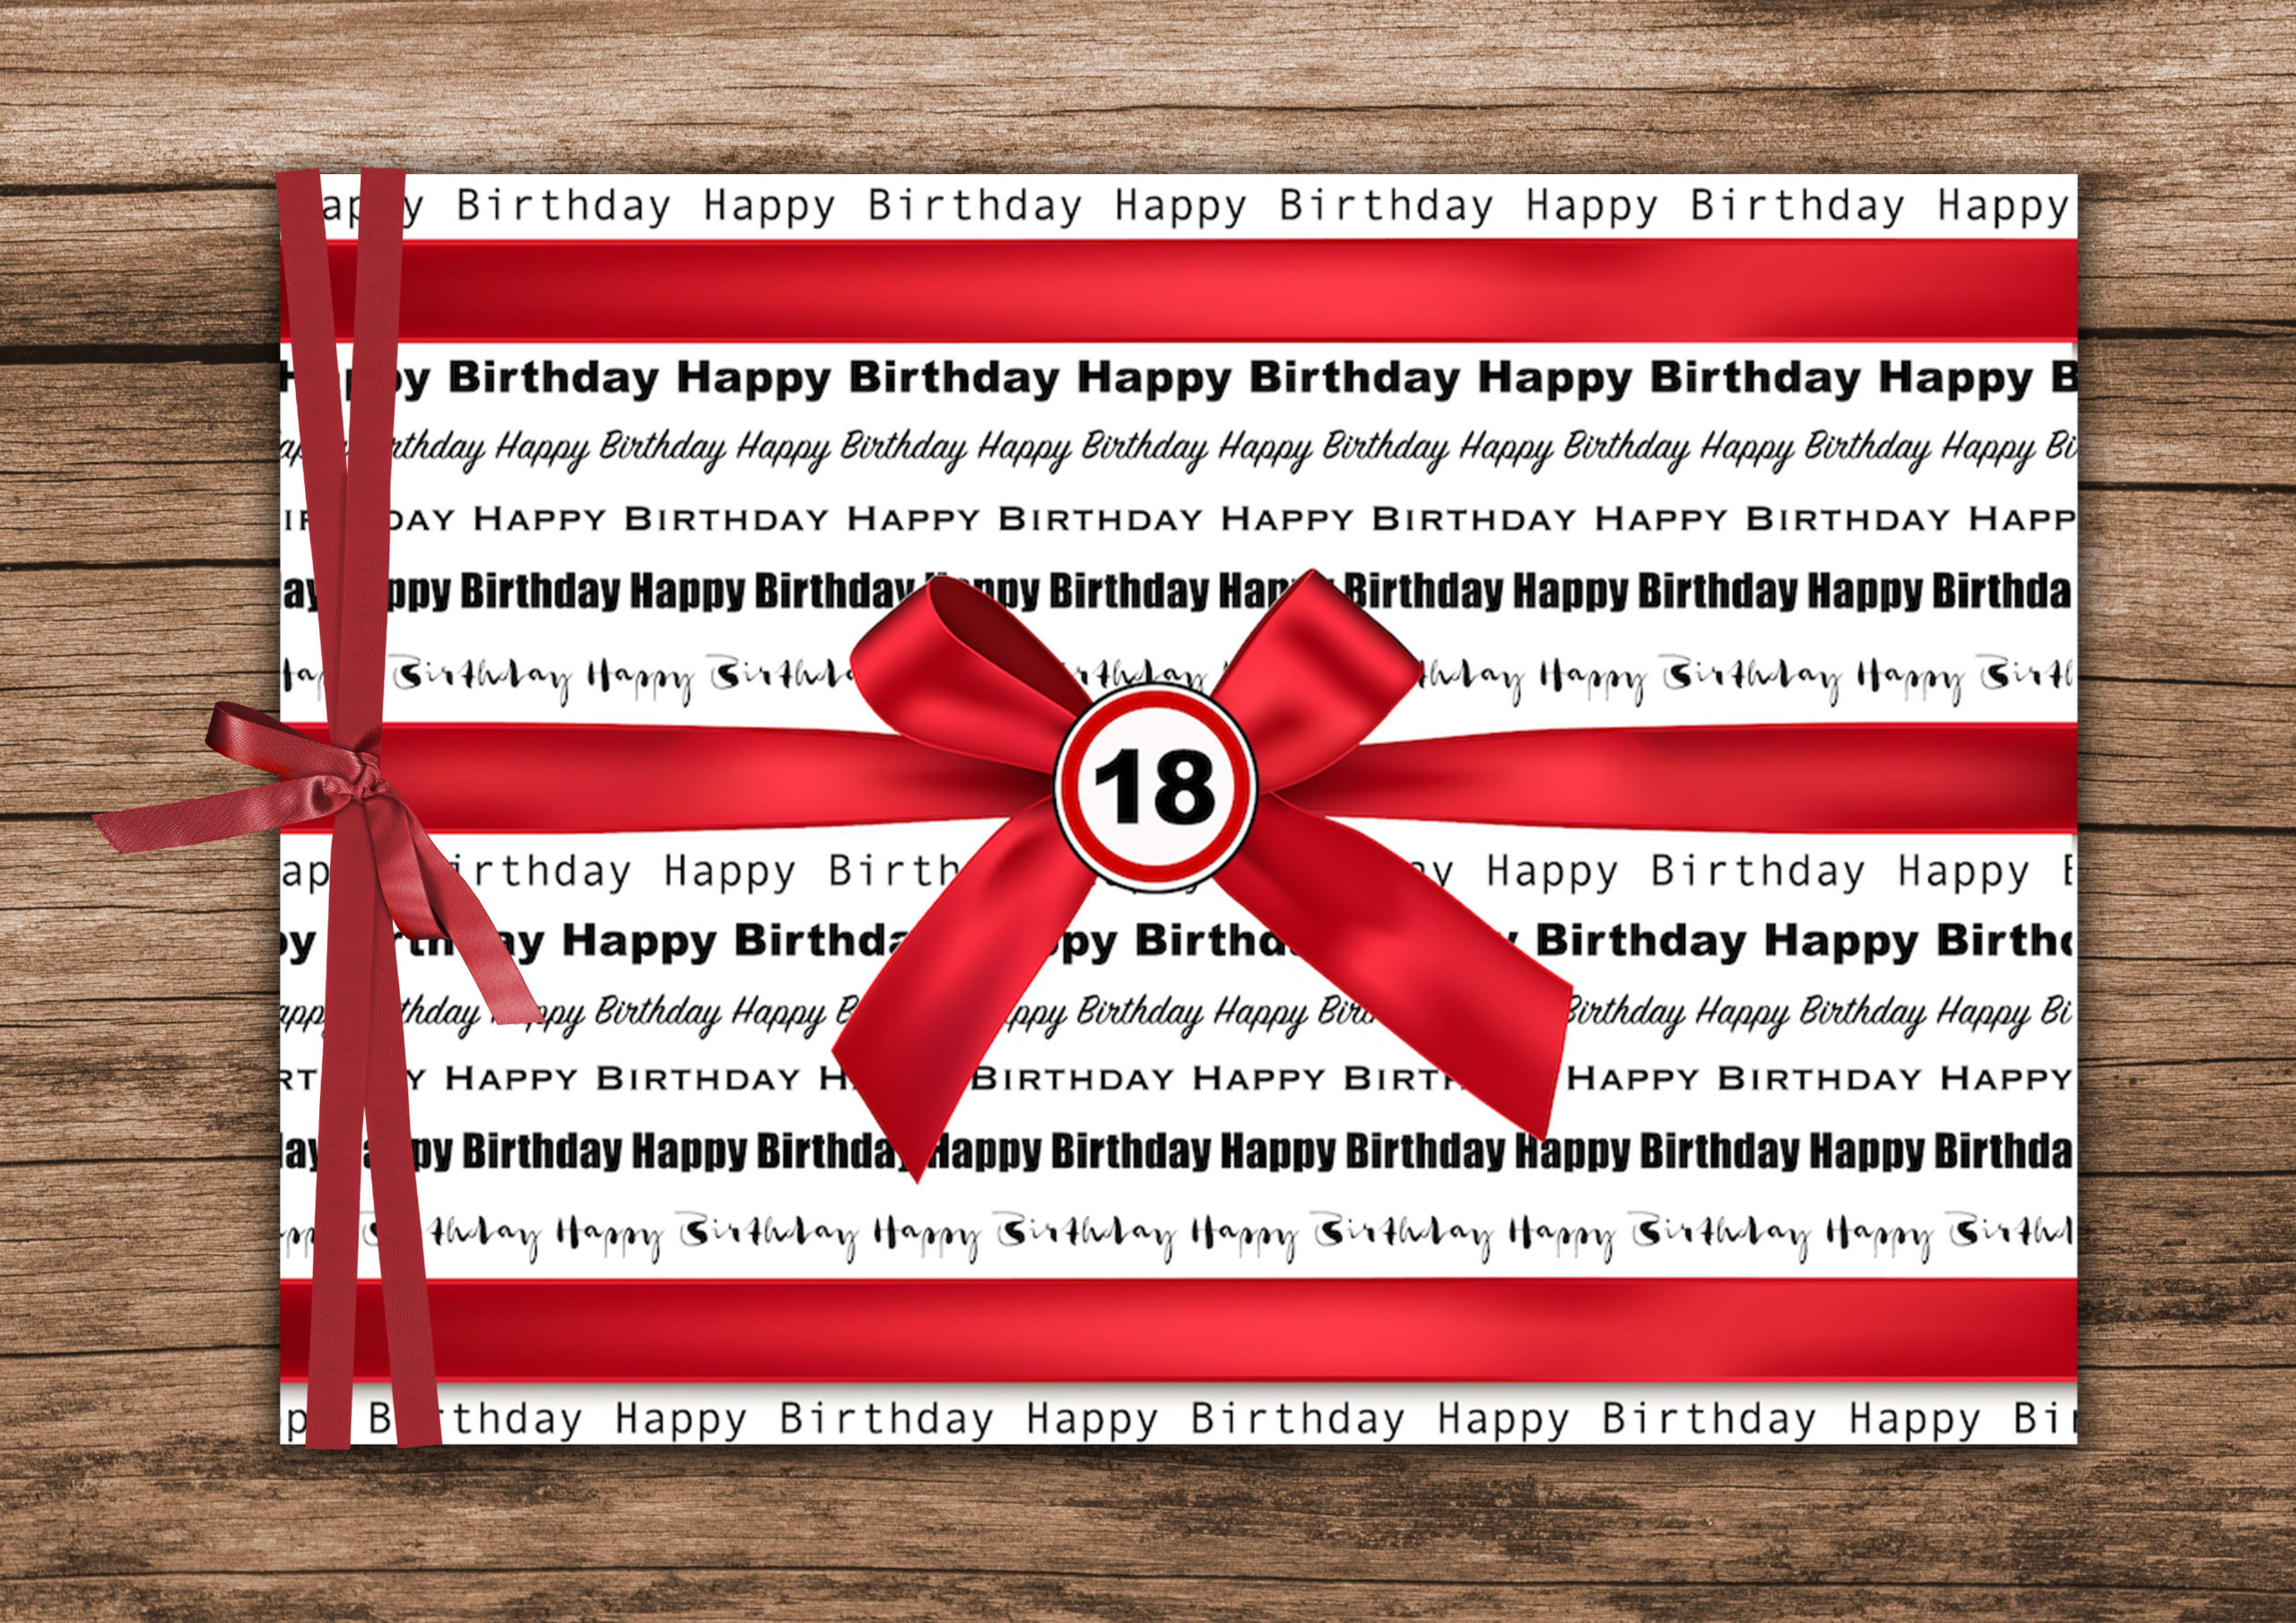 Geschenk Zum 18 Geburtstag Download Idaviduell